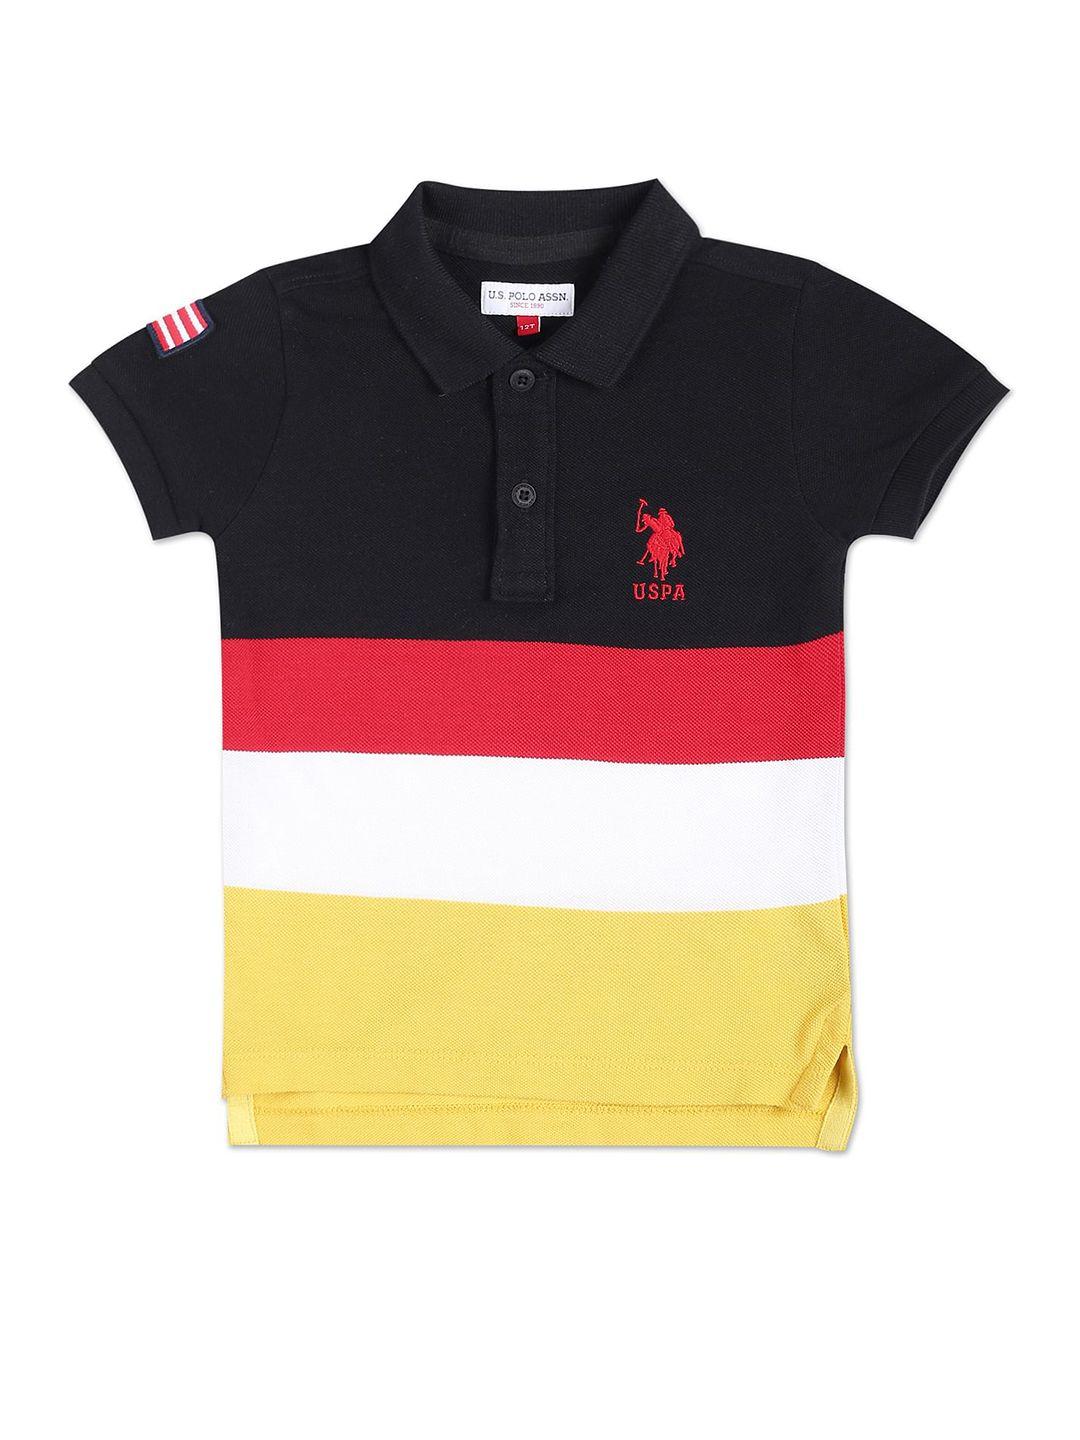 u.s. polo assn. kids boys colourblocked polo collar pure cotton t-shirt